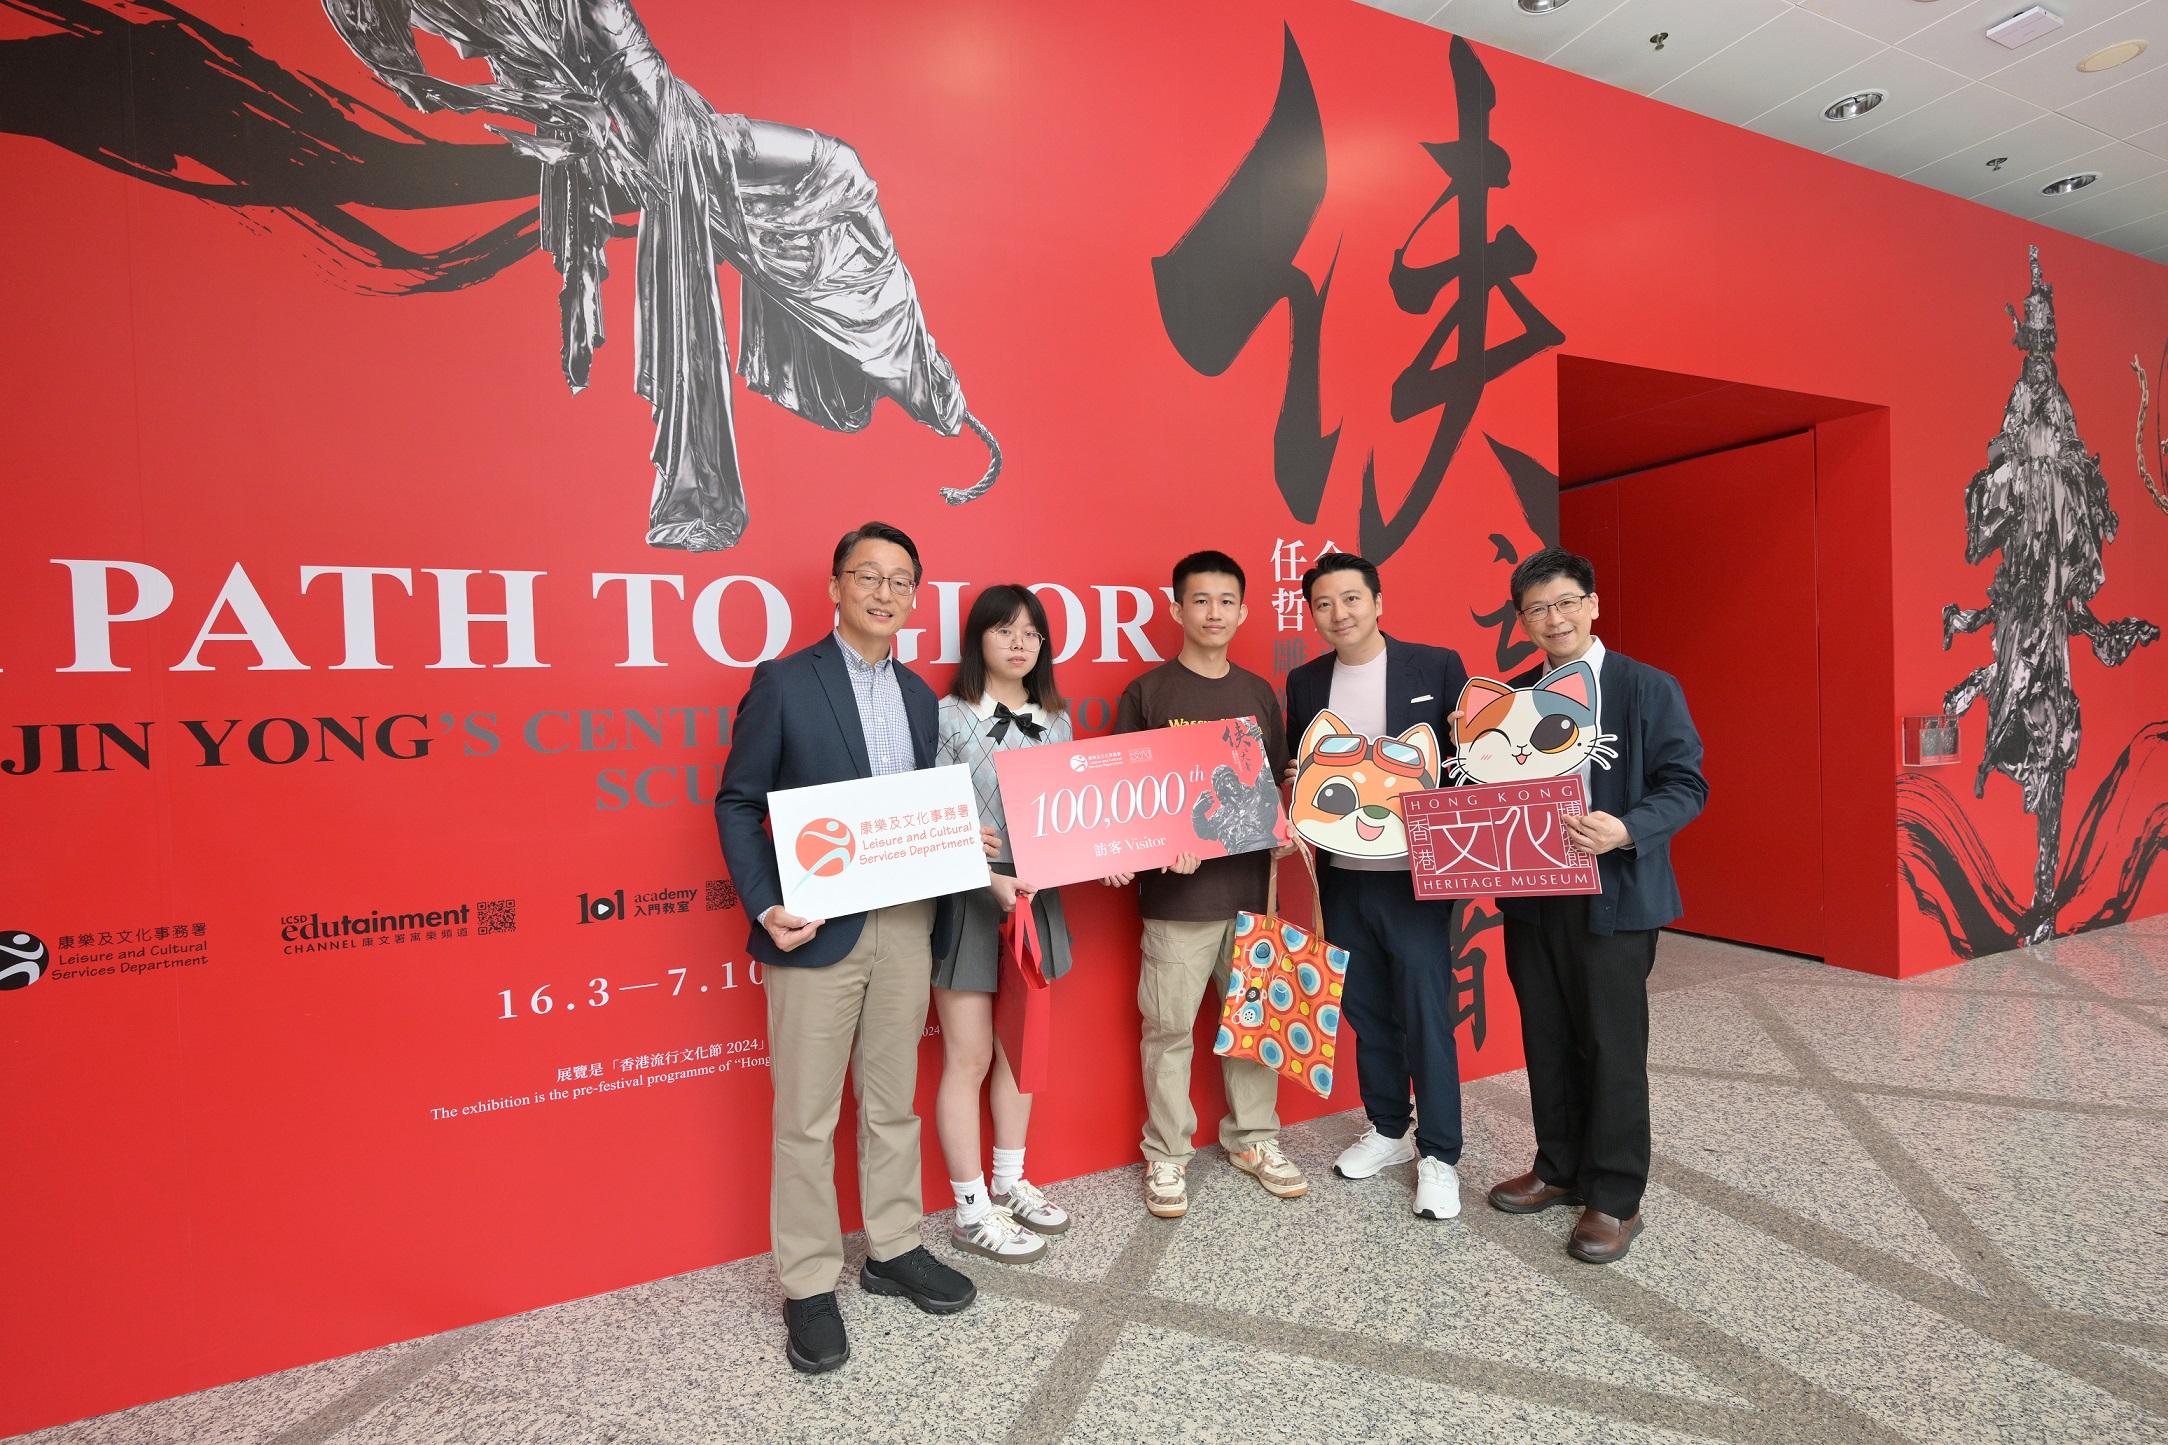 香港文化博物馆的「侠之大者──金庸百年诞辰纪念．任哲雕塑展」自三月十六日开展以来，已有十万人次前来参观。图示康乐及文化事务署署长刘明光（左一）、联合策展人方圆明（右二）及香港文化博物馆署理总馆长邓民亮博士（右一），今日（五月一日）在博物馆欢迎展览第10万名访客并送上纪念品。